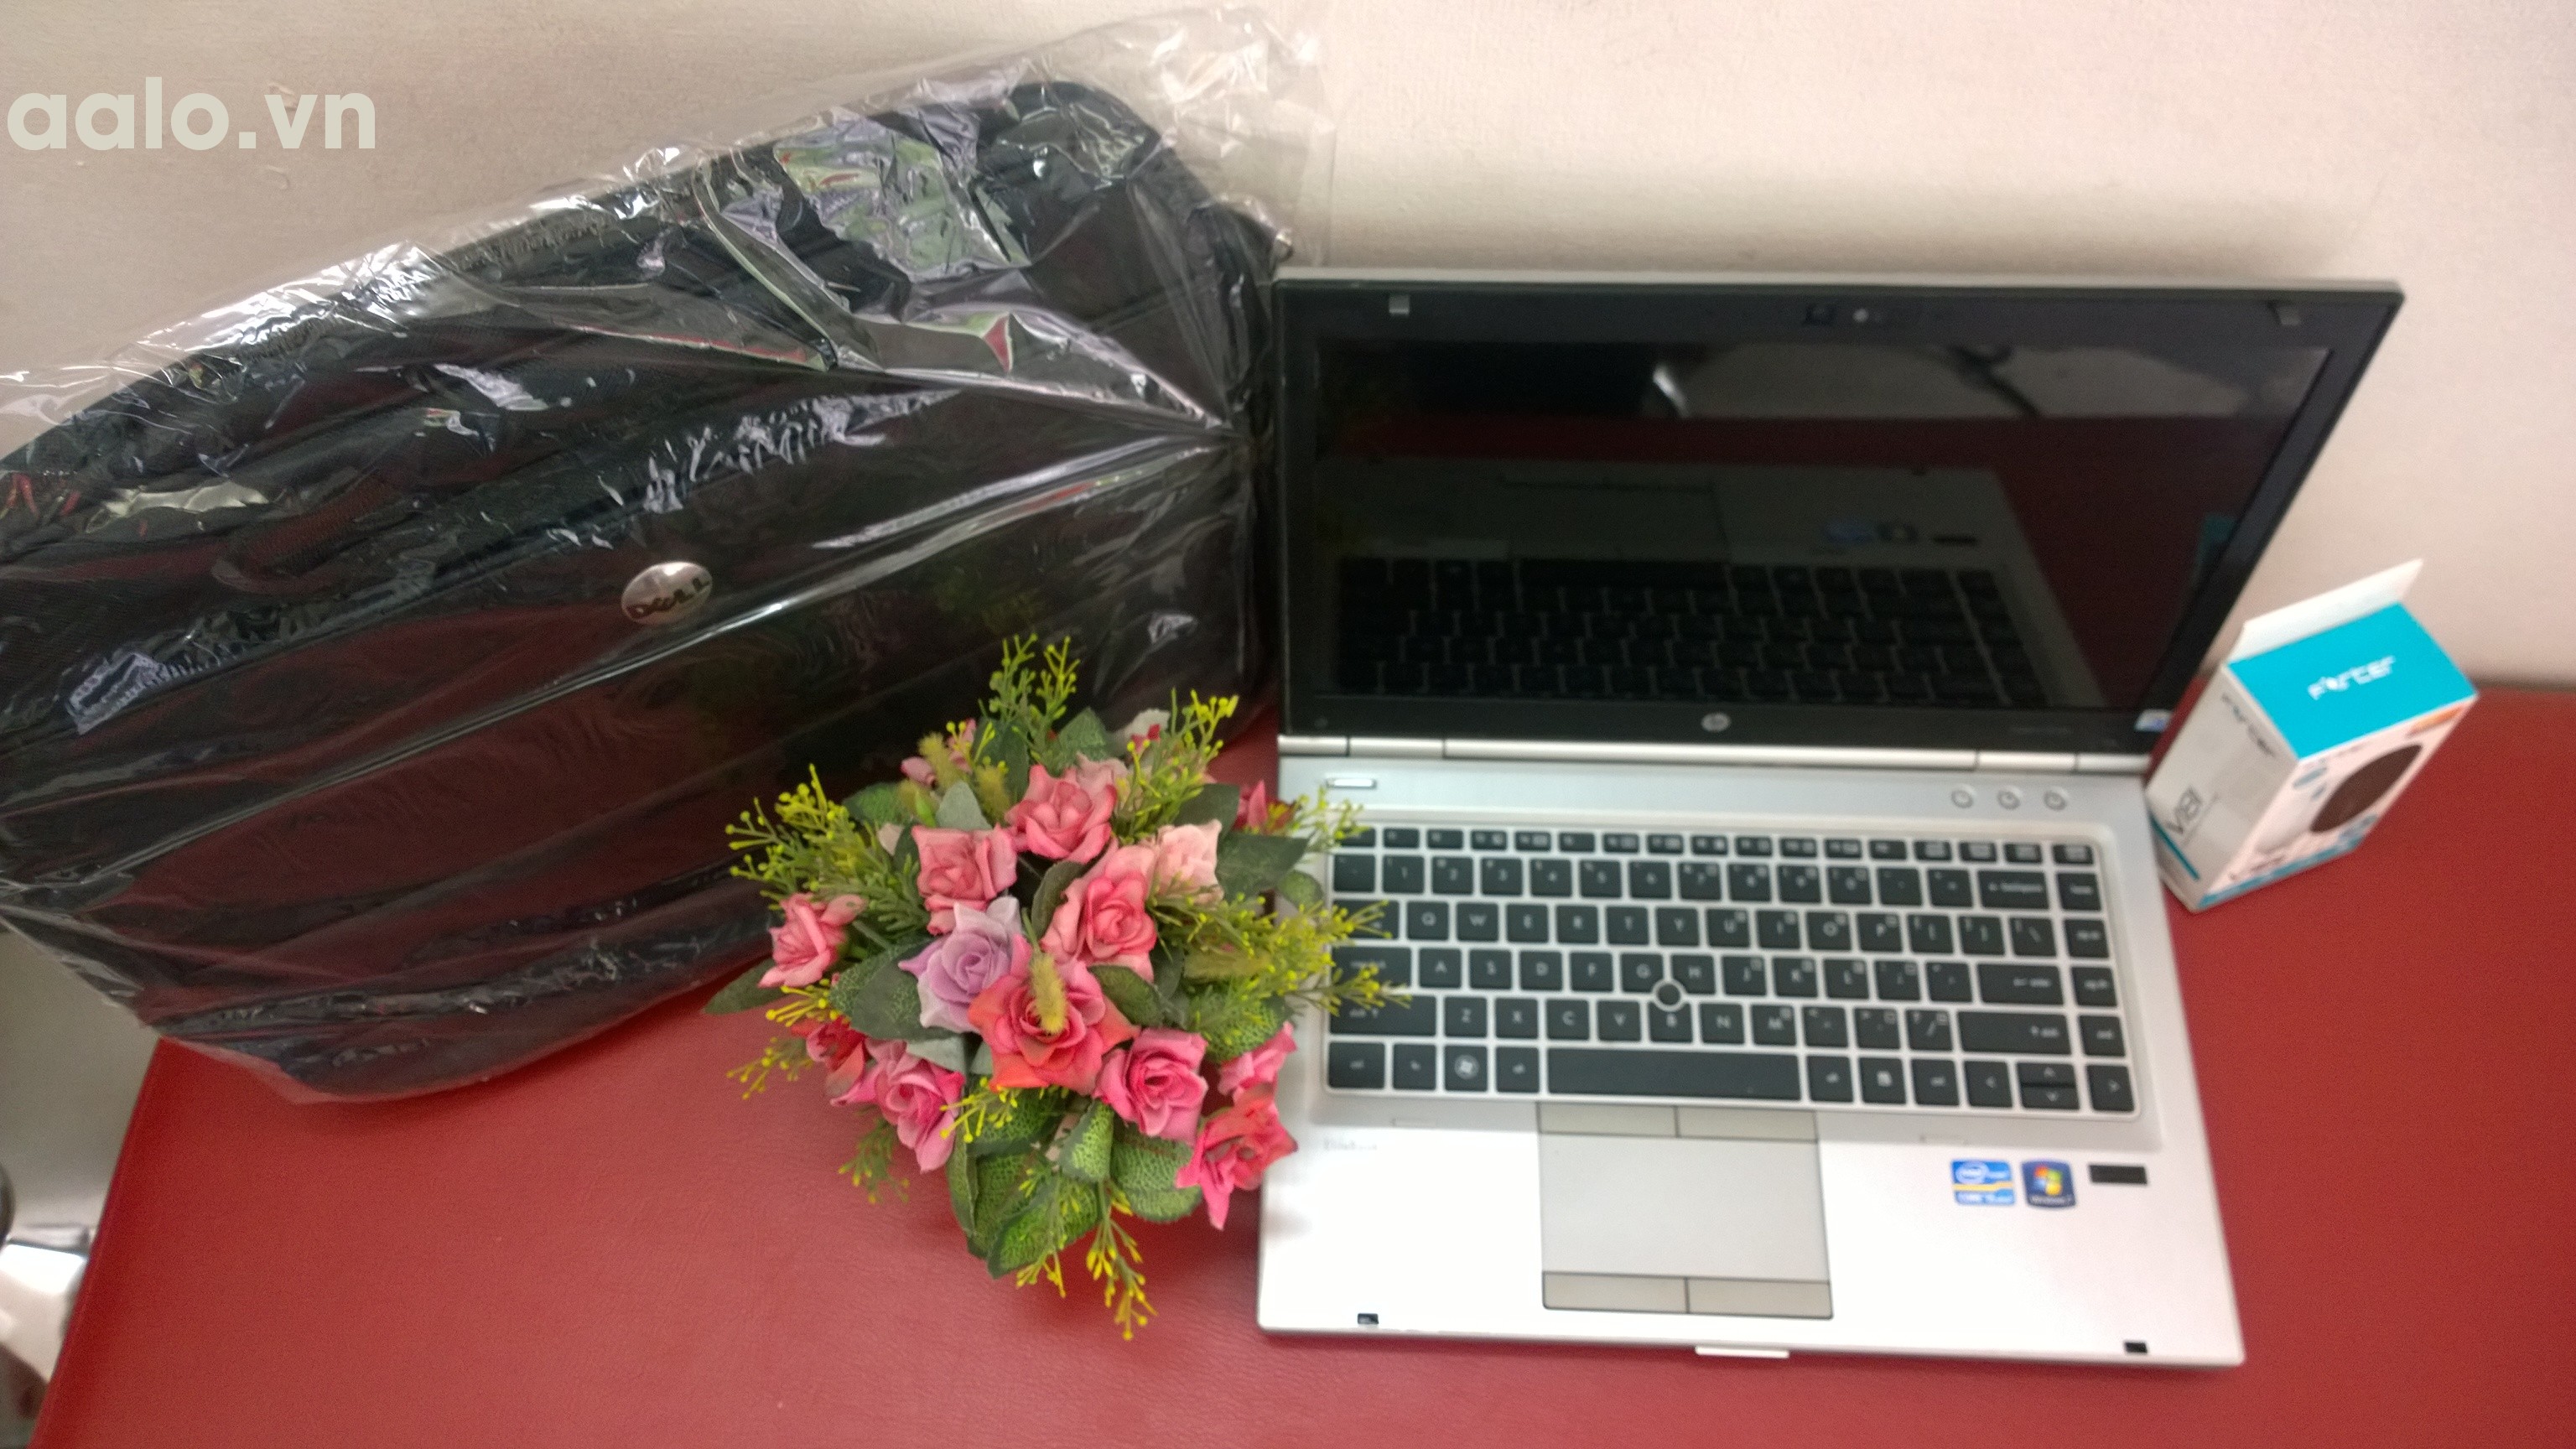 Laptop HP Elitebook 8460p cũ (Core i5 2520M, 4GB, 250GB, Intel HD Graphics 3000, 14 inch) - bảo hành 1 năm